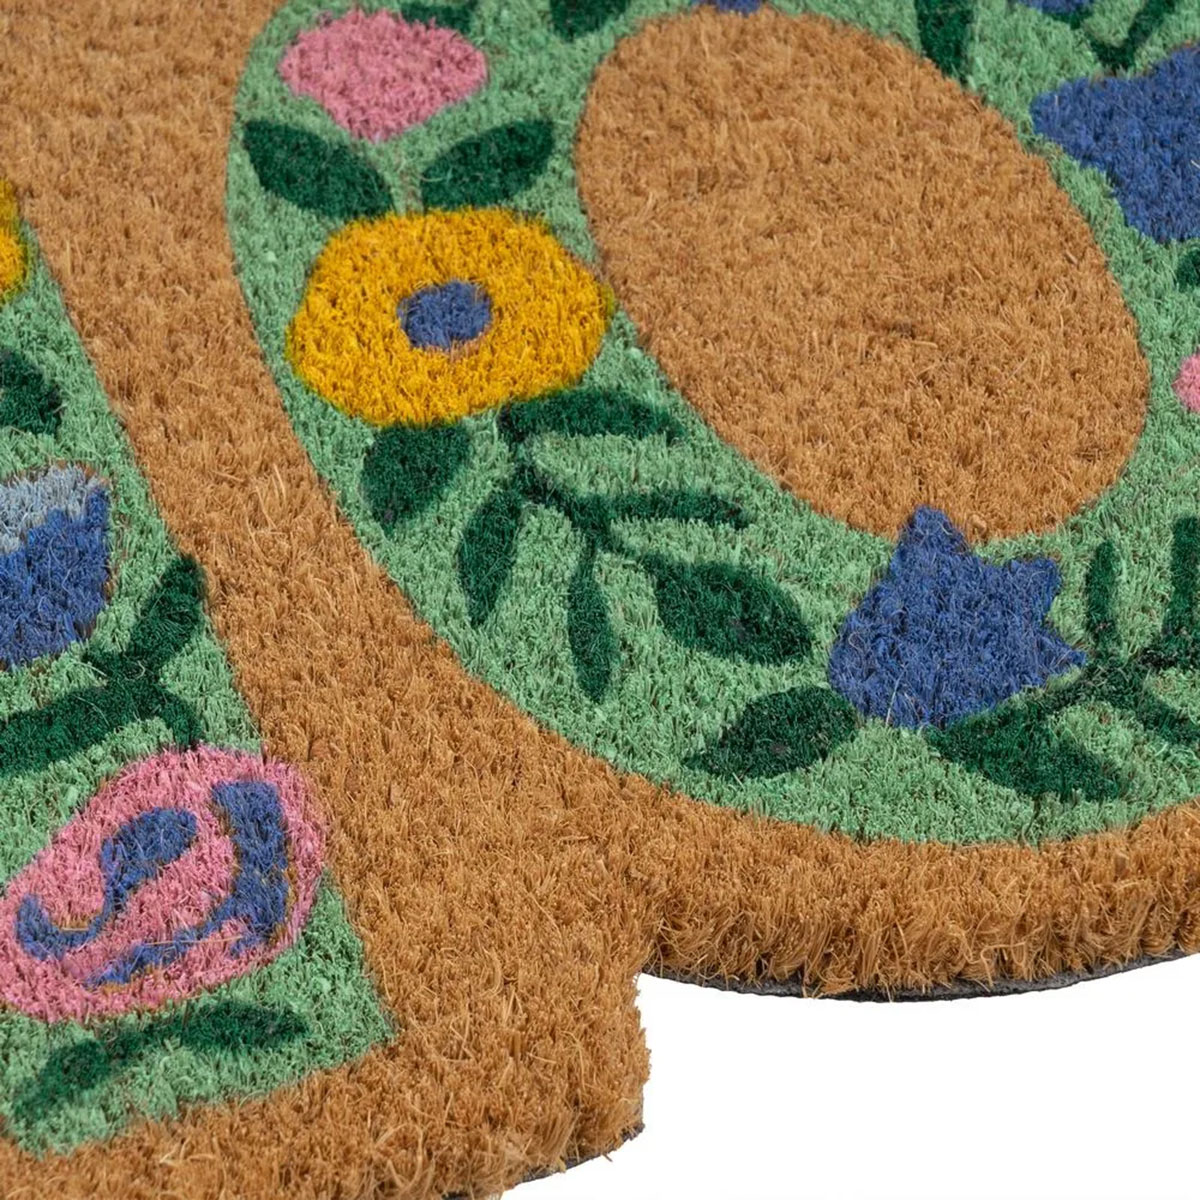 Floral Home Doormat 75 cm